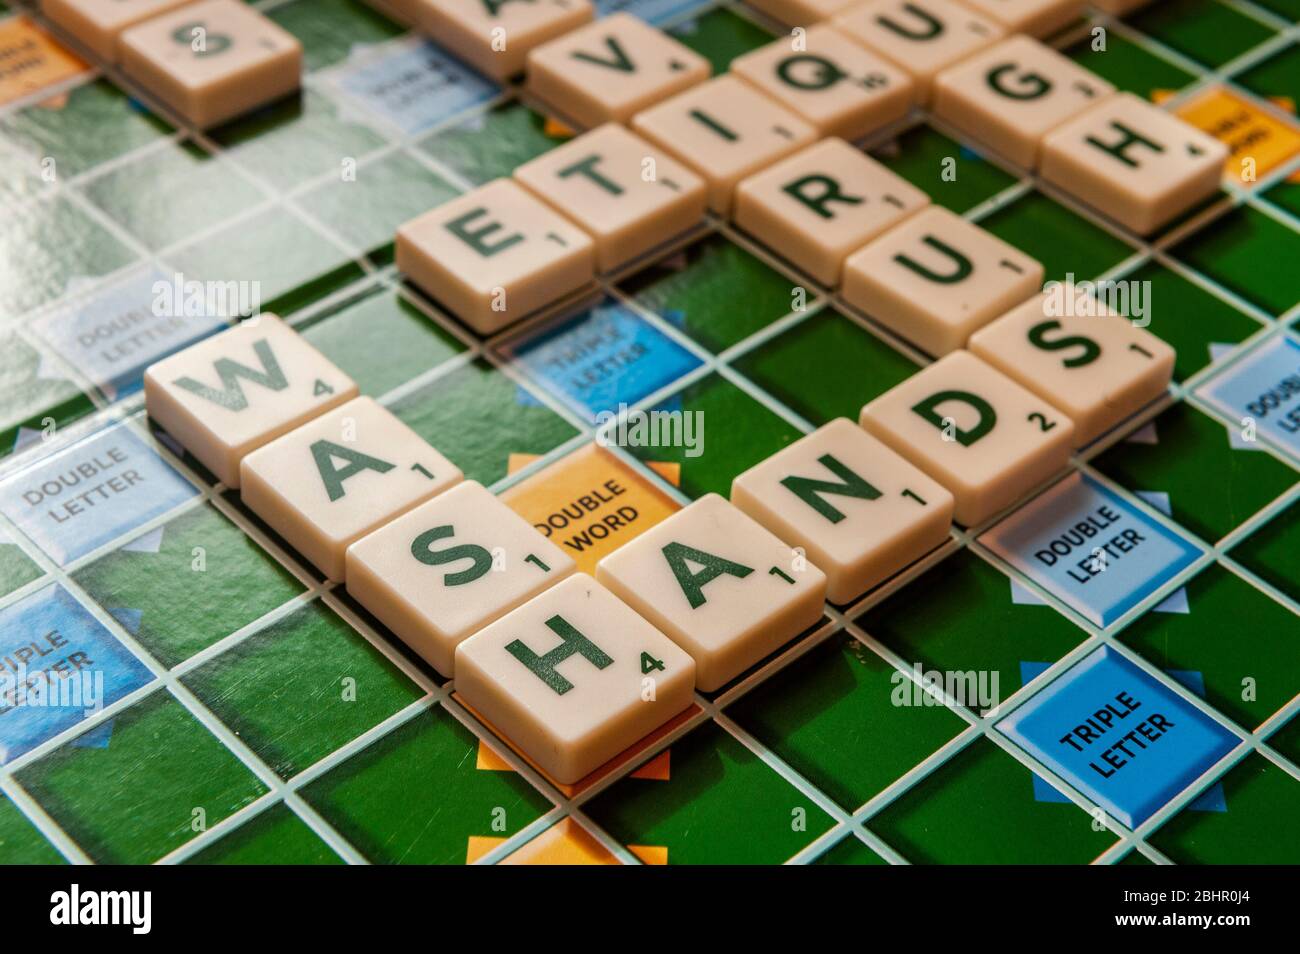 Worte auf einem Scrabble-Brett in Bezug auf die Coronavirus/Covid-19-Pandemie mit 'Wash Hands' im Fokus. Stockfoto